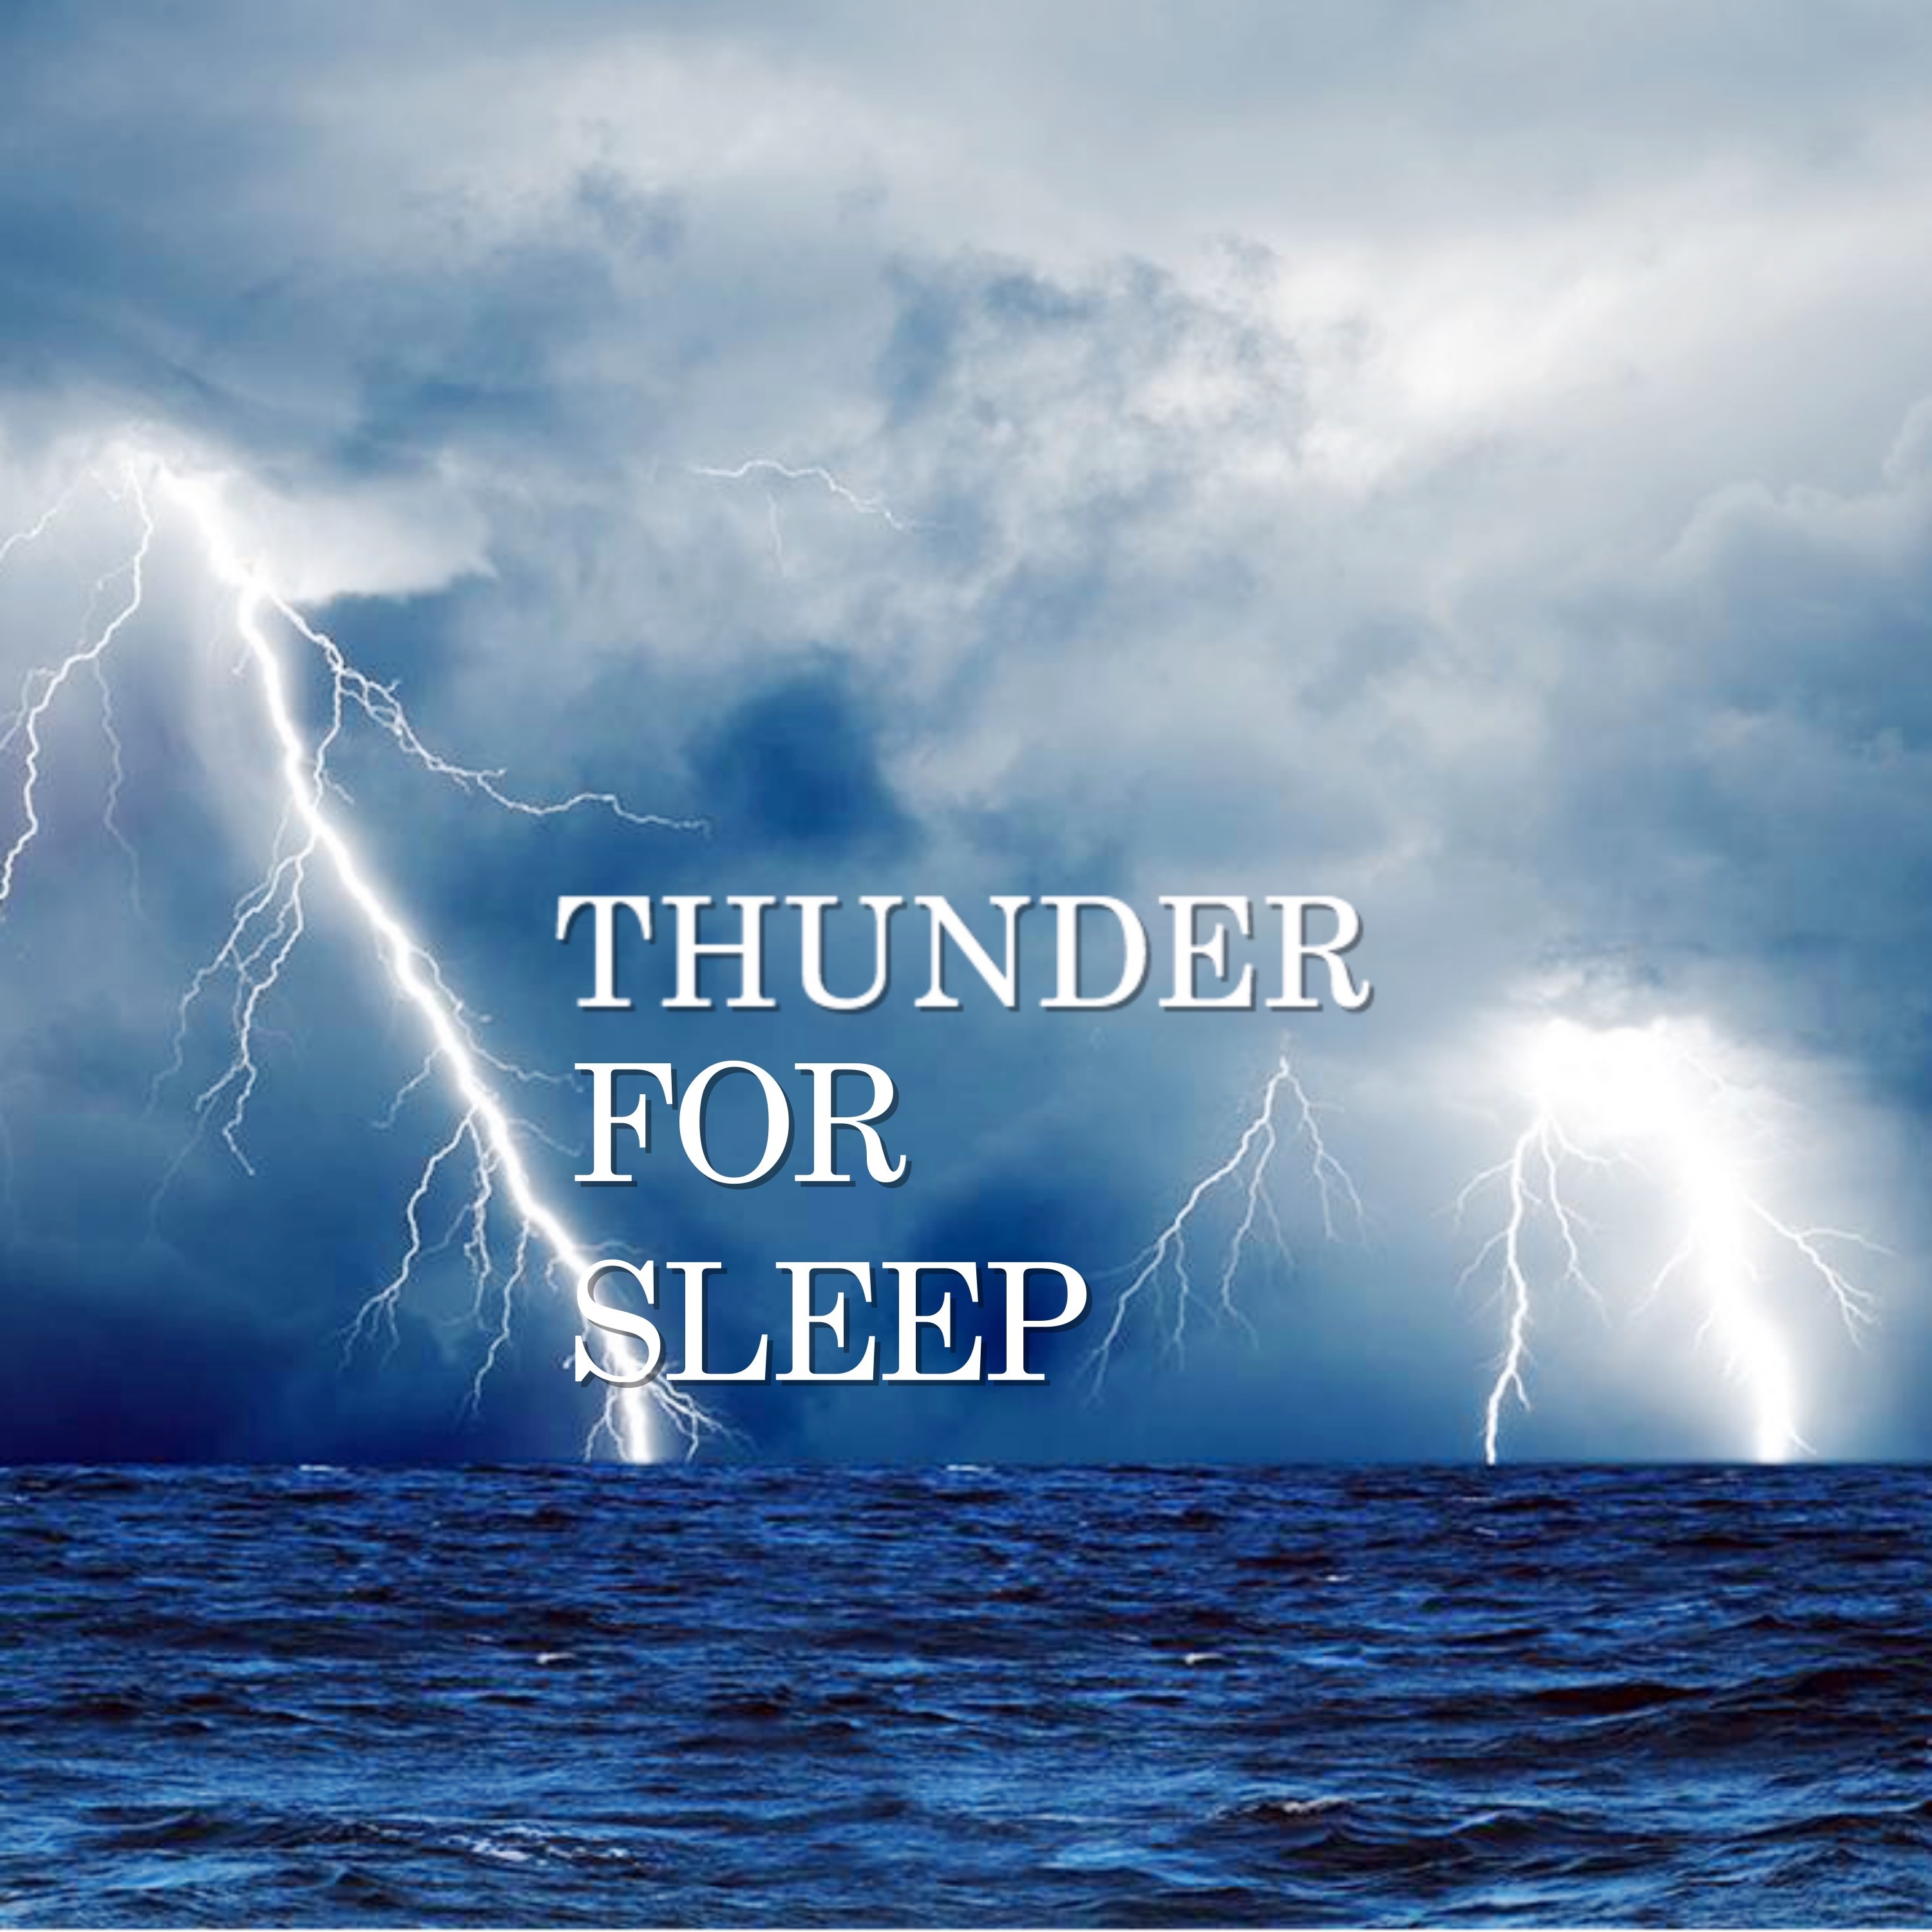 Thunder for Sleep